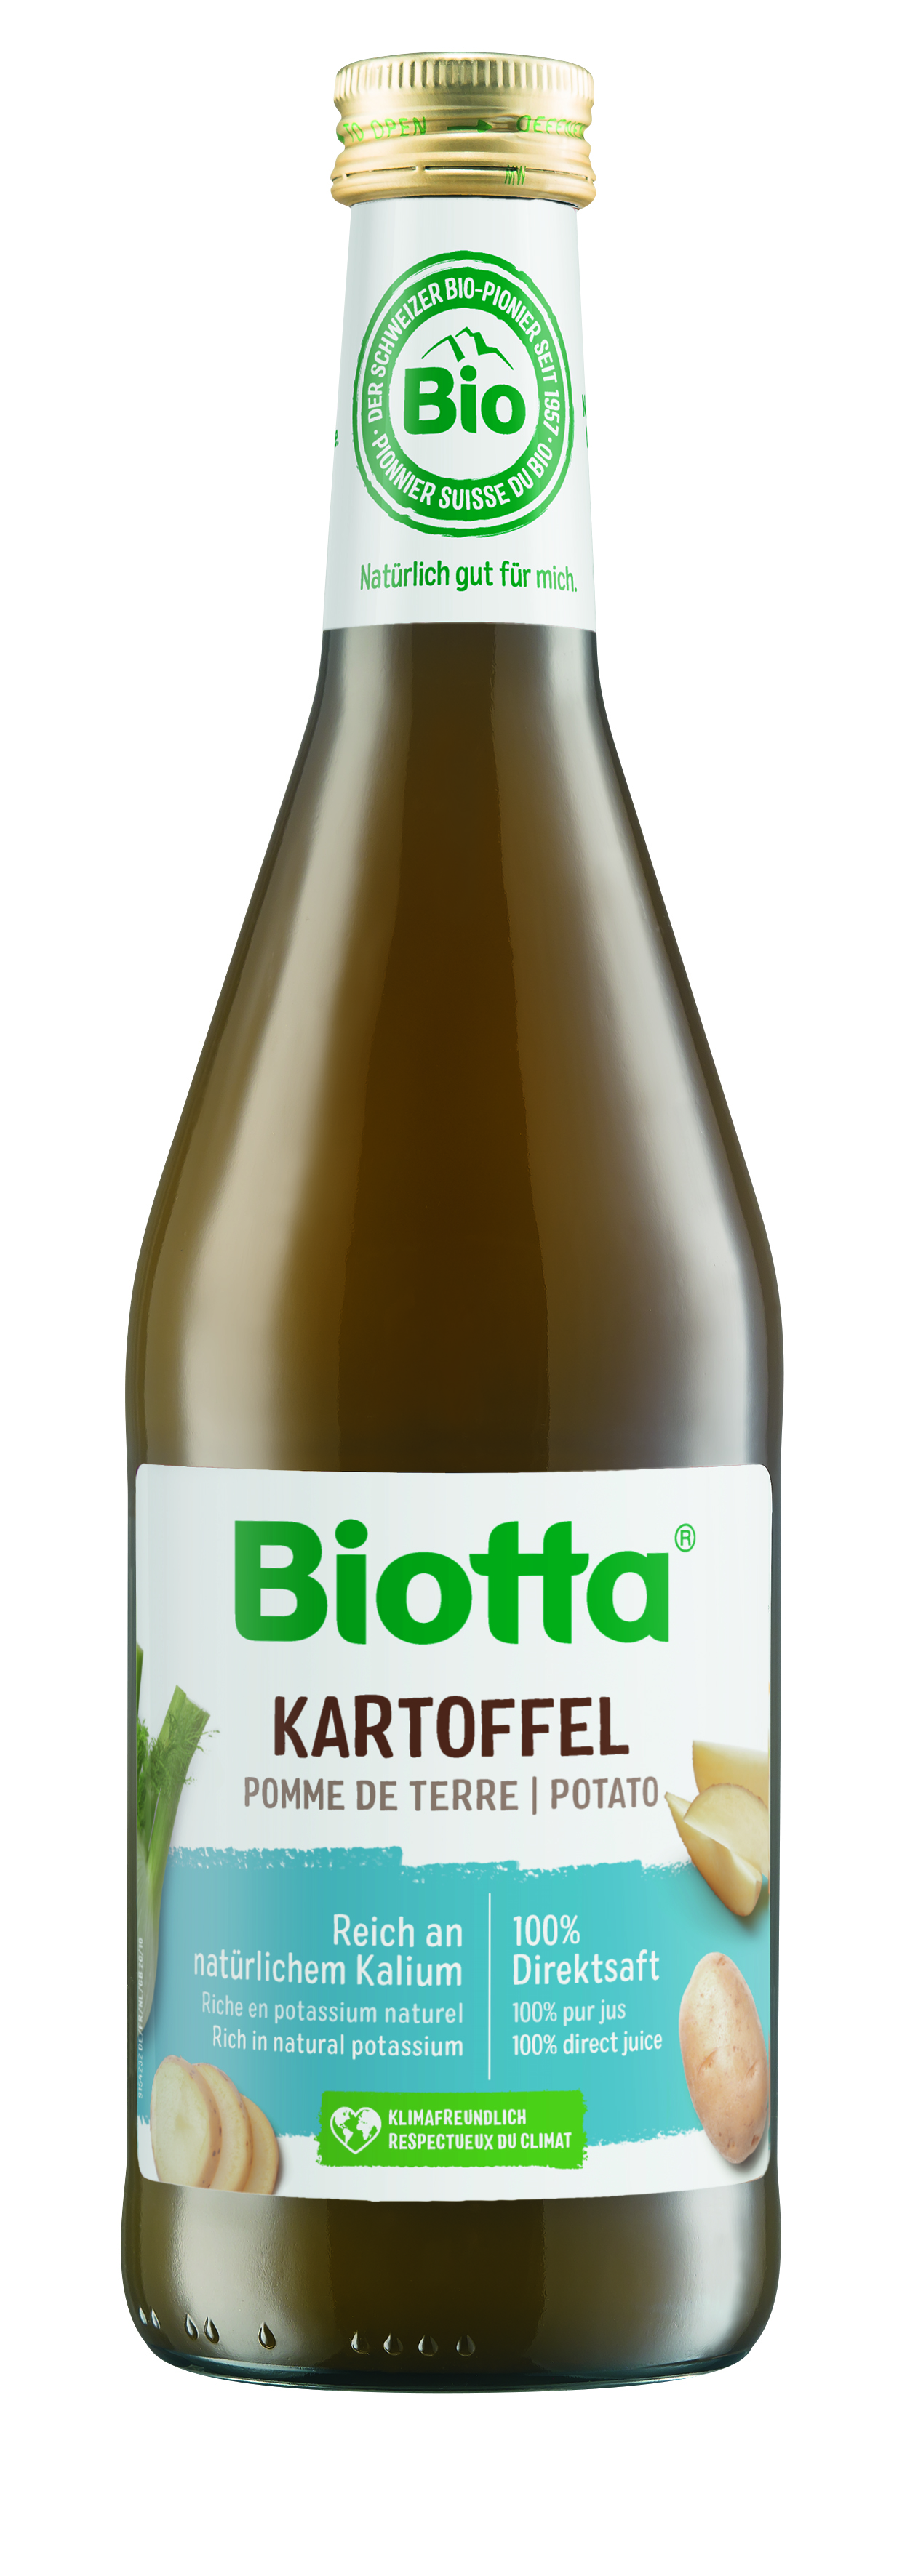 Biotta zemiaková šťava 6 kartónov - cena za 1 ks 4,316€ s DPH